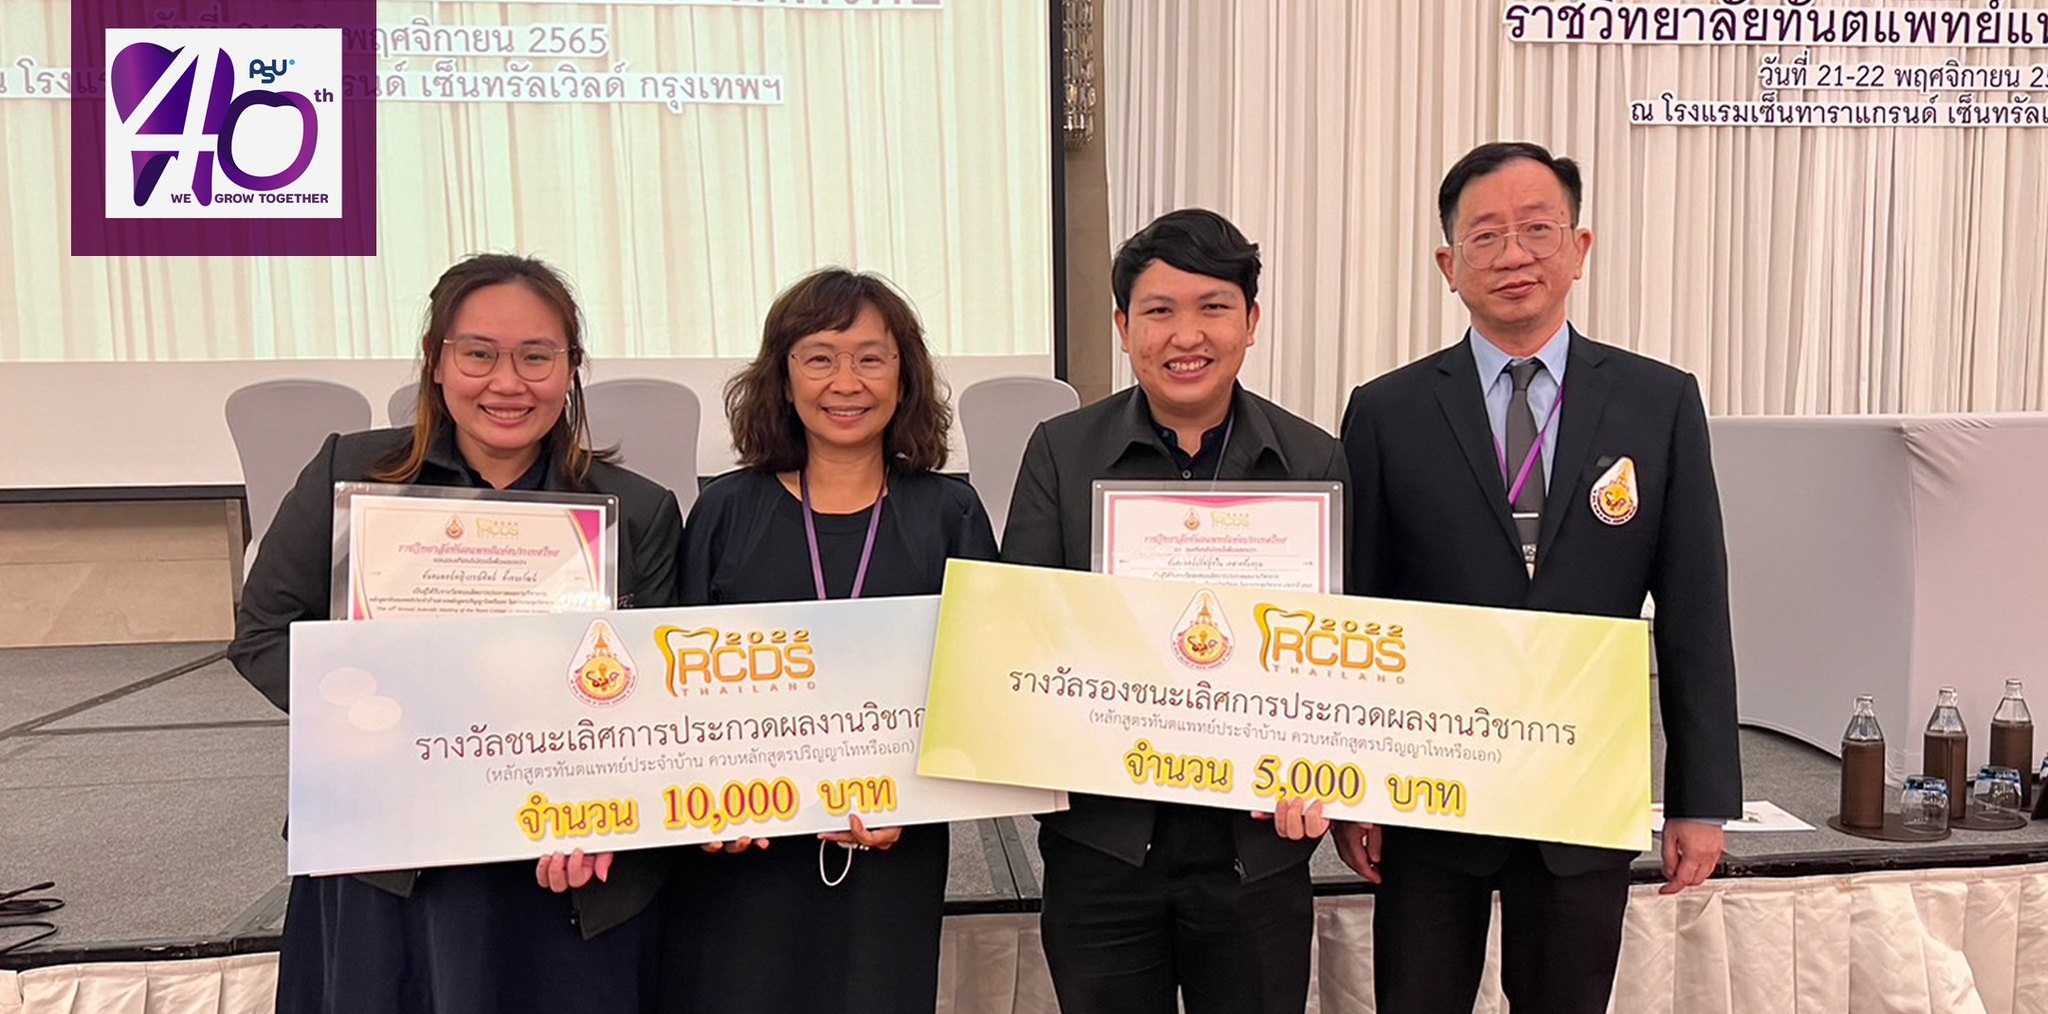 ขอแสดงความยินดีกับ นักศึกษาหลังปริญญา ที่ได้รับรางวัลชนะเลิศ และรองชนะเลิศ ในงานประชุมวิชาการ “The 10th Annual Meeting of the Royal College of Dental Surgeons of Thailand” ประจำปี 2565